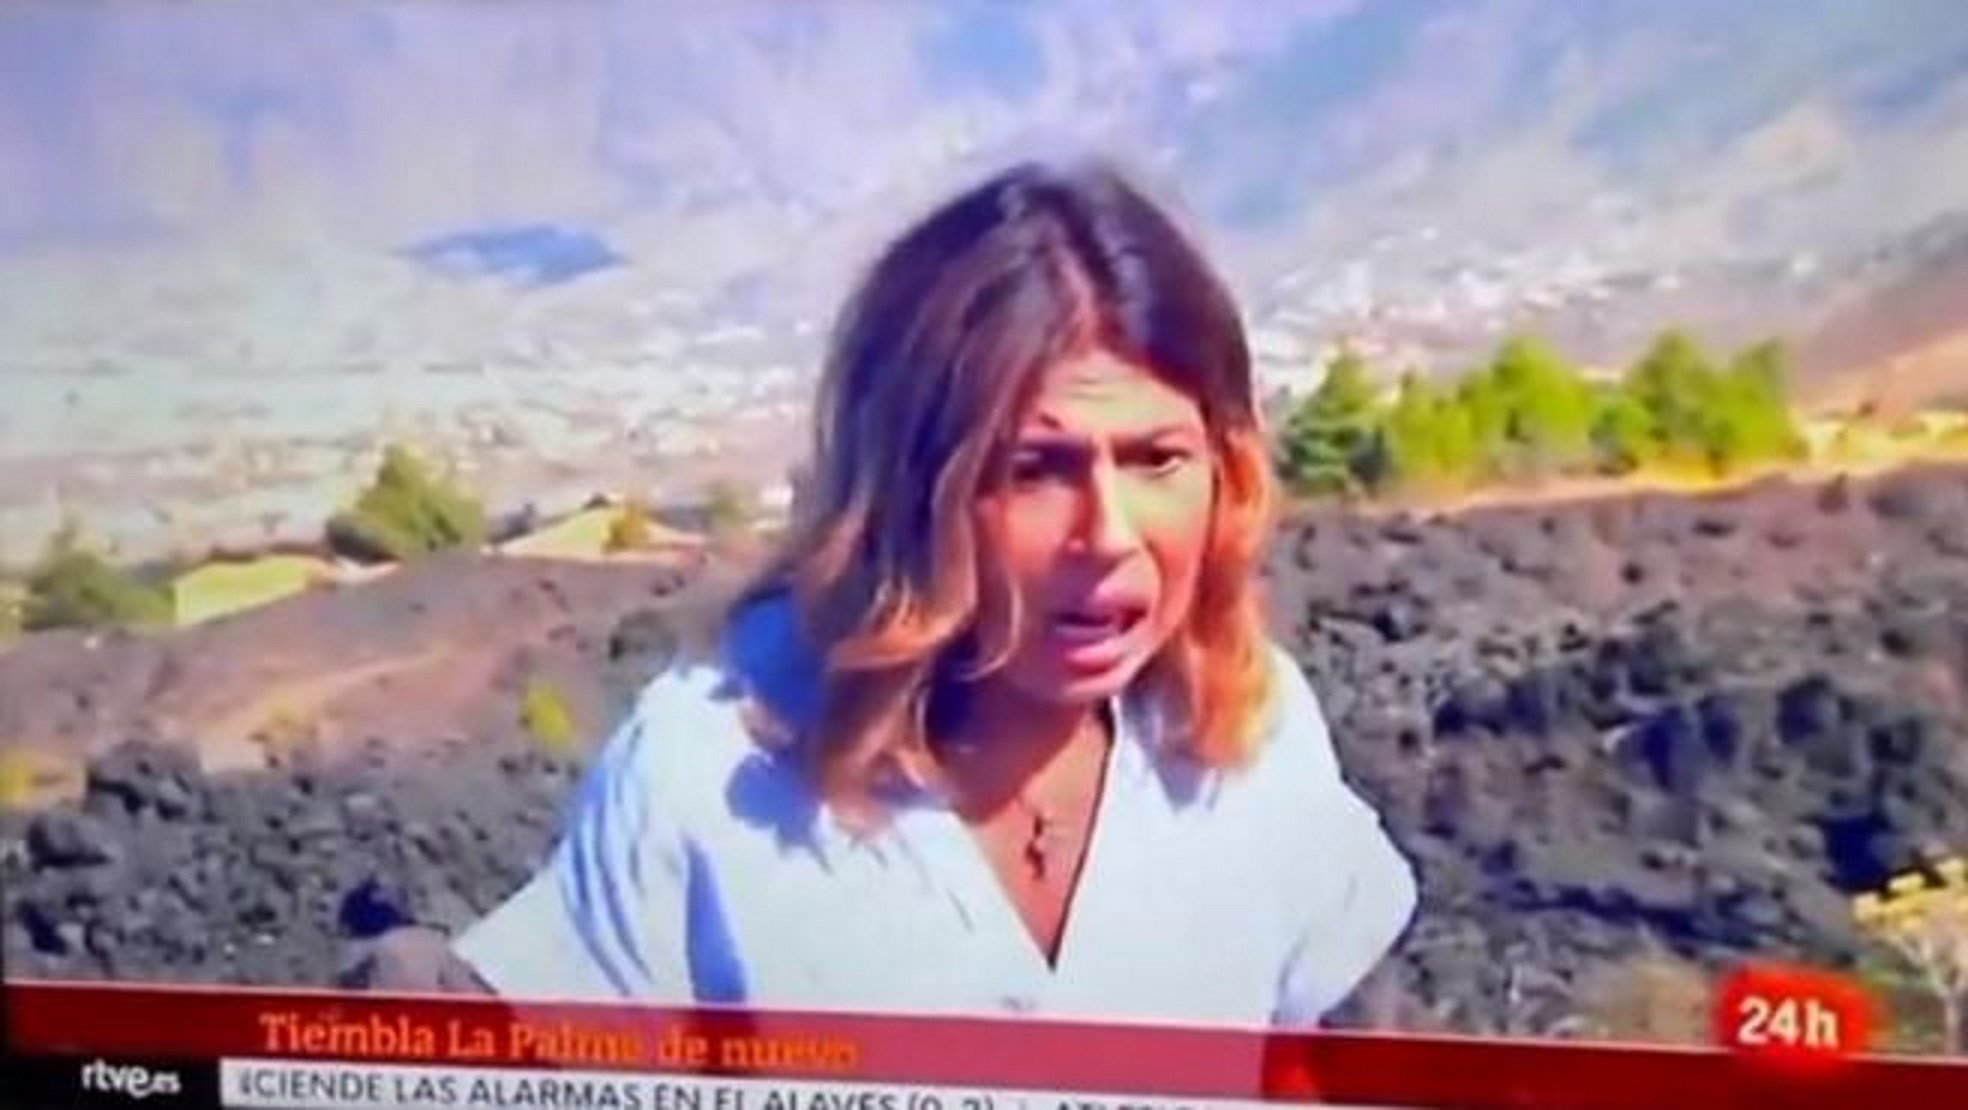 L'esglai d'una reportera durant l'erupció del volcà a La Palma